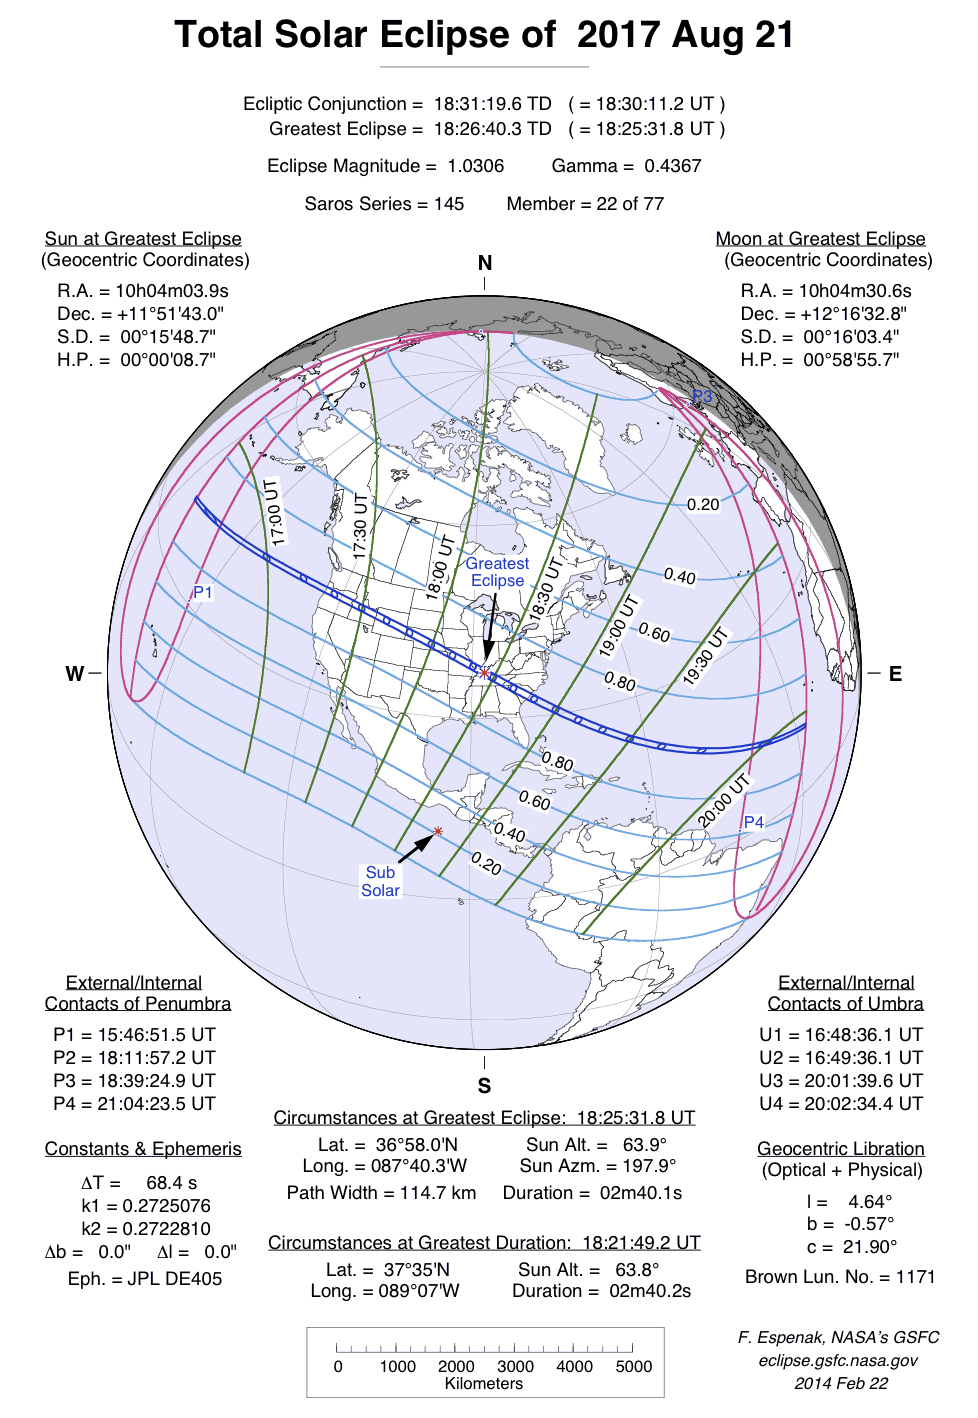 Verlauf der Totalen Sonnenfinsternis am 21.08.2017